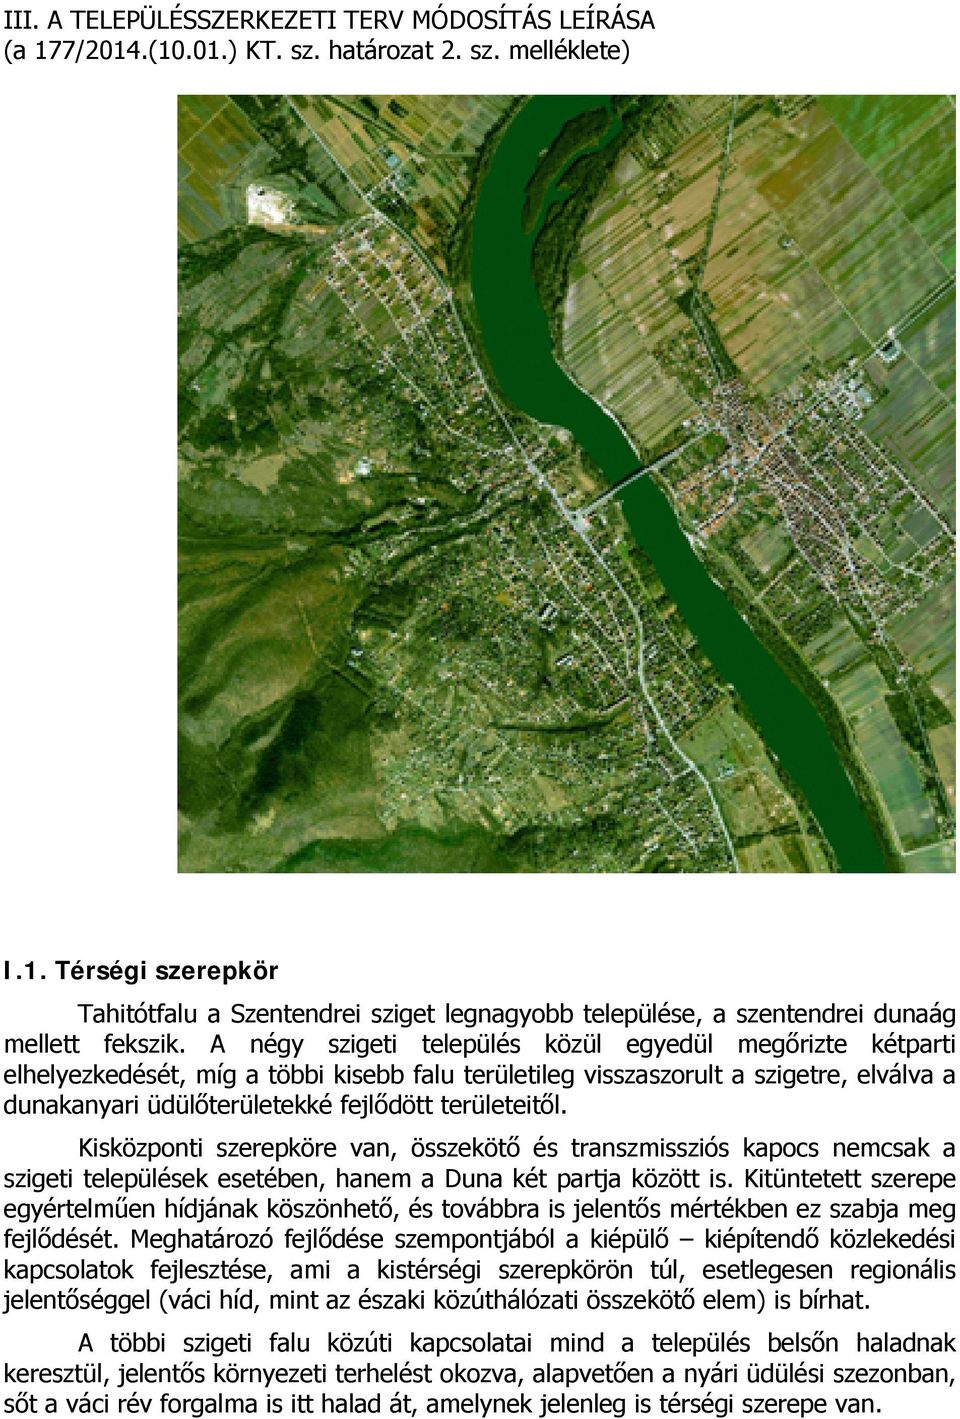 Kisközponti szerepköre van, összekötő és transzmissziós kapocs nemcsak a szigeti települések esetében, hanem a Duna két partja között is.